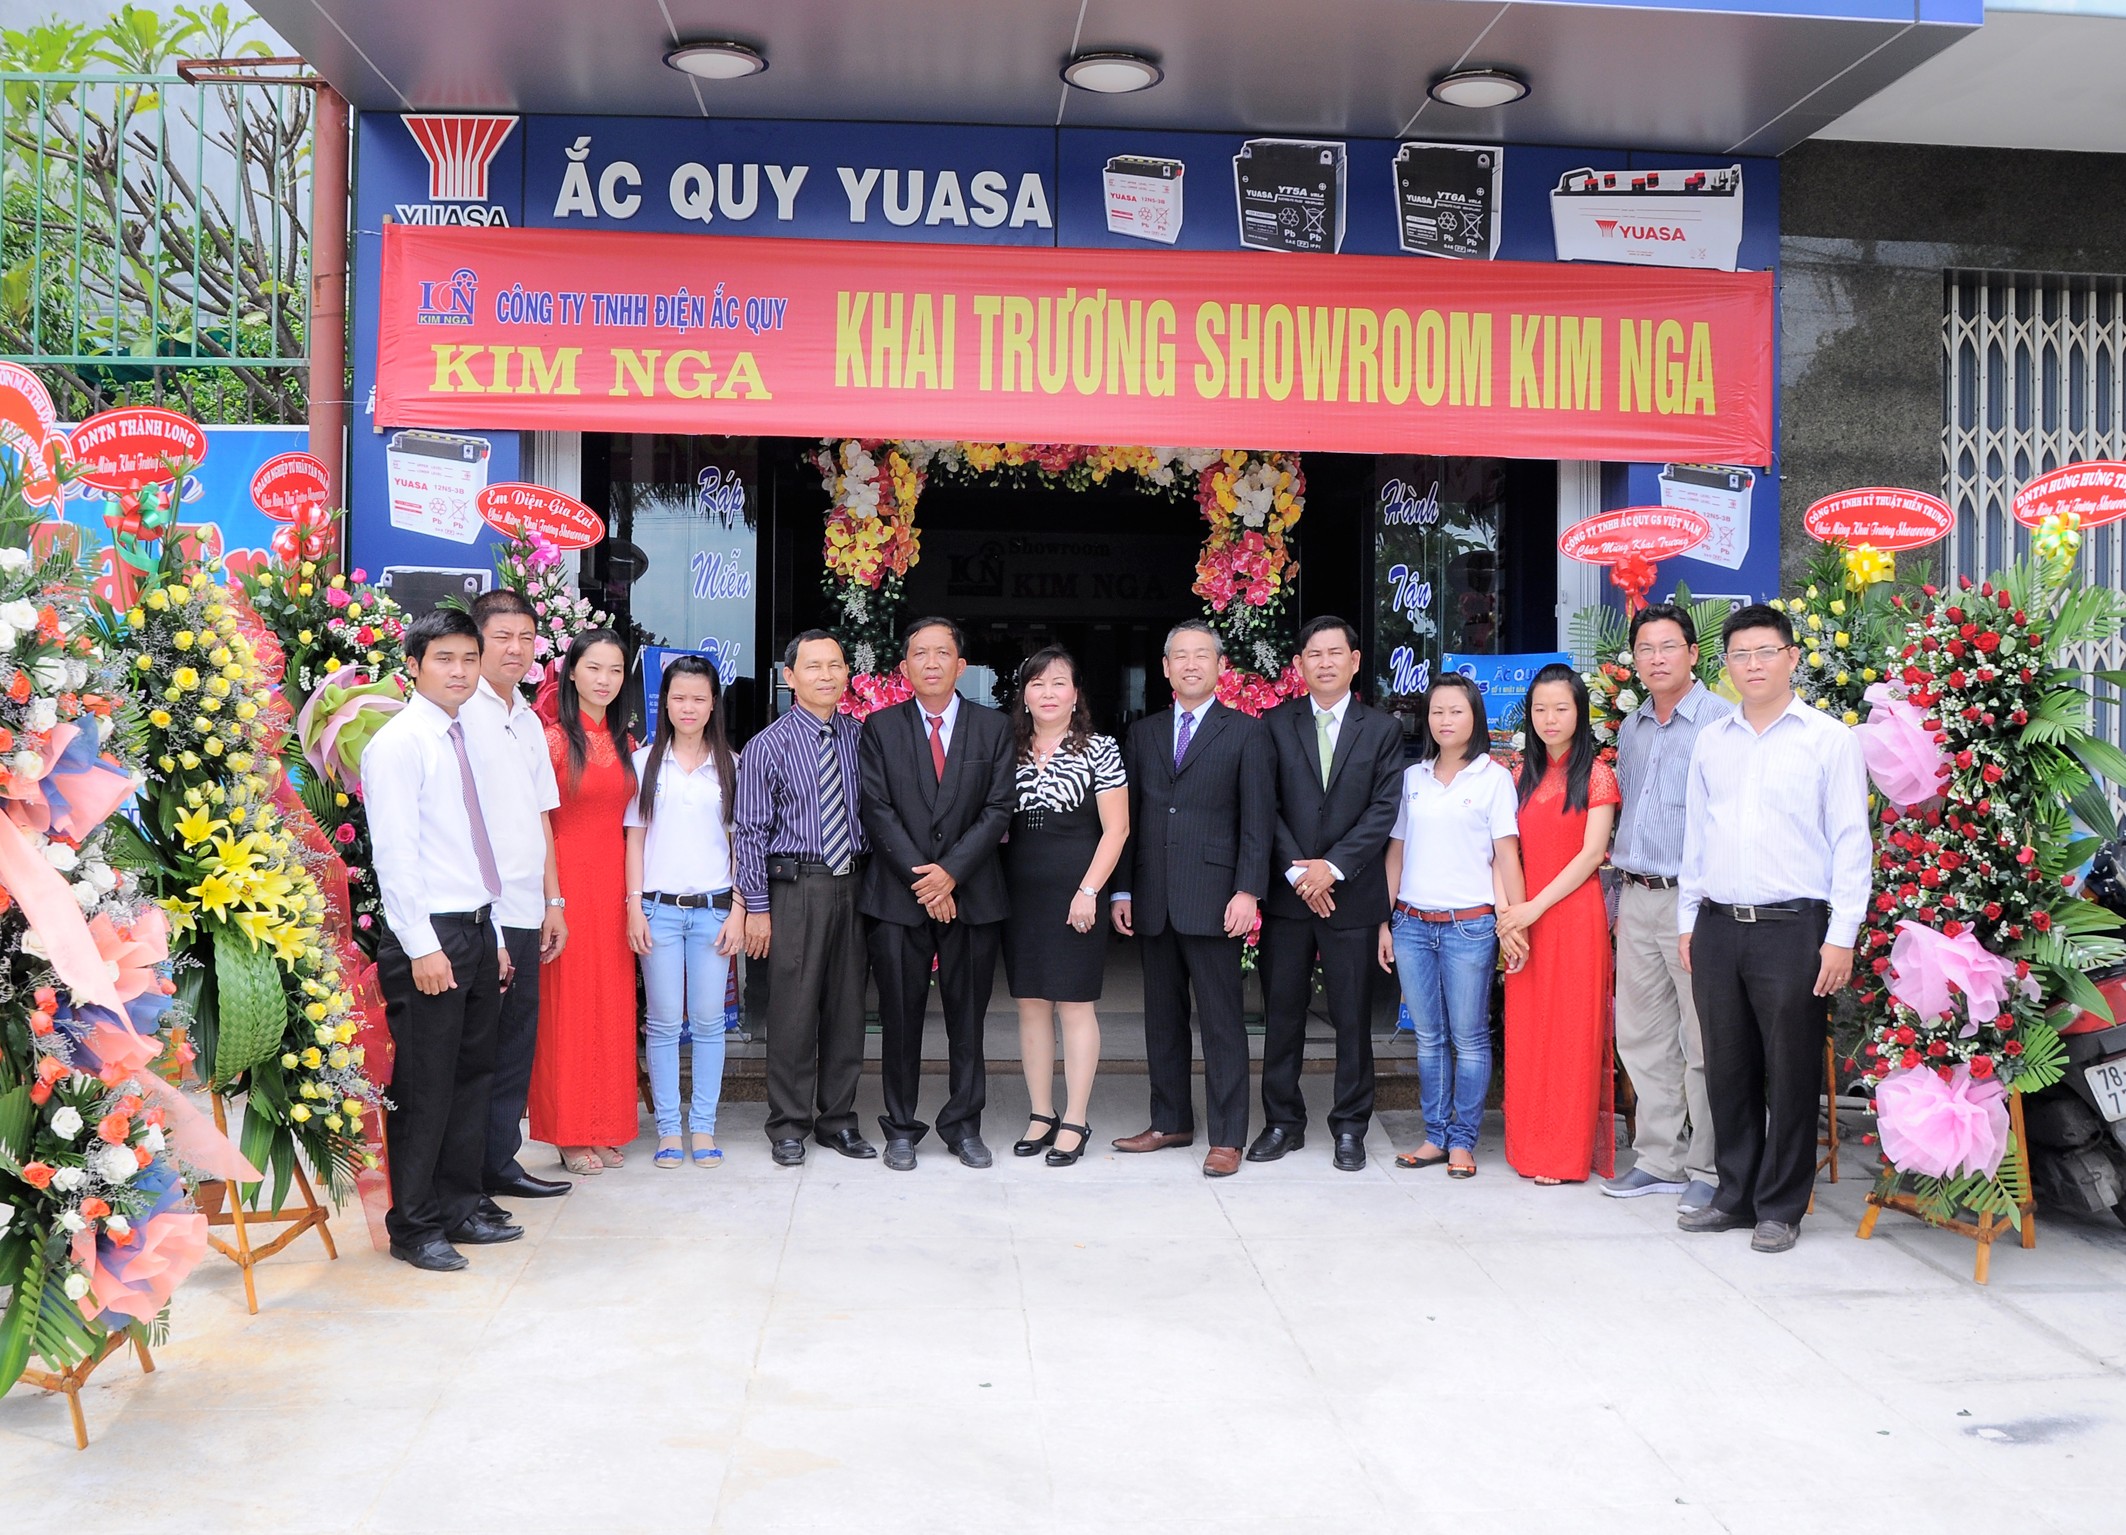 Khai trương Showroom Yuasa & Hội nghị khách hàng Ắc quy GS & Yuasa tại tỉnh Phú Yên (Nhà phân phối Kim Nga)